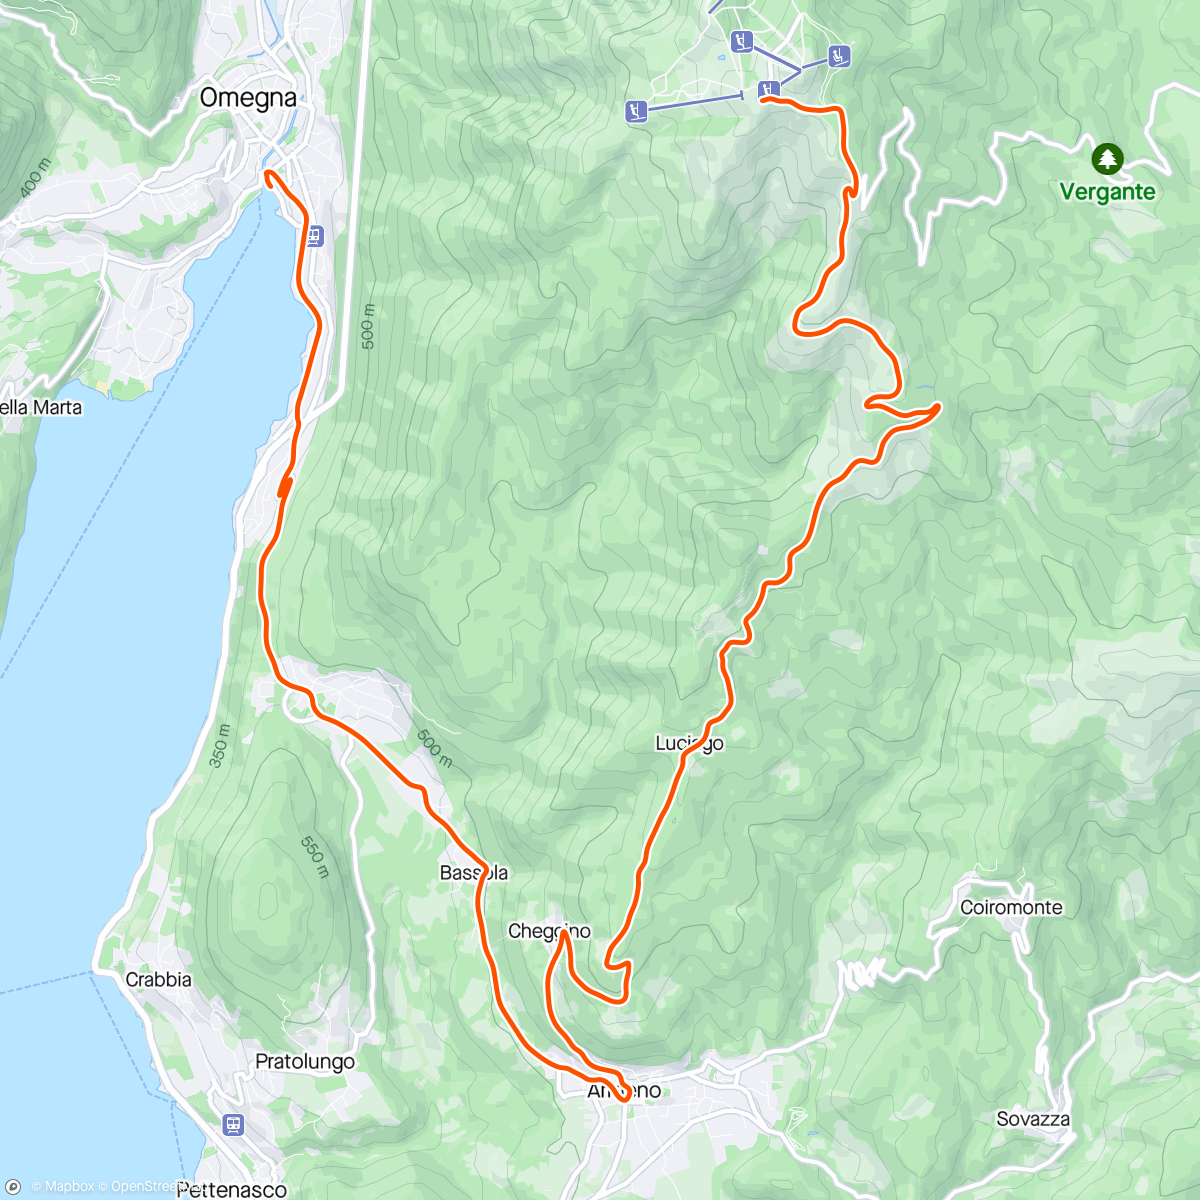 Mapa da atividade, ROUVY - Mottarone to Omegna | Downhill | IT ®mky160